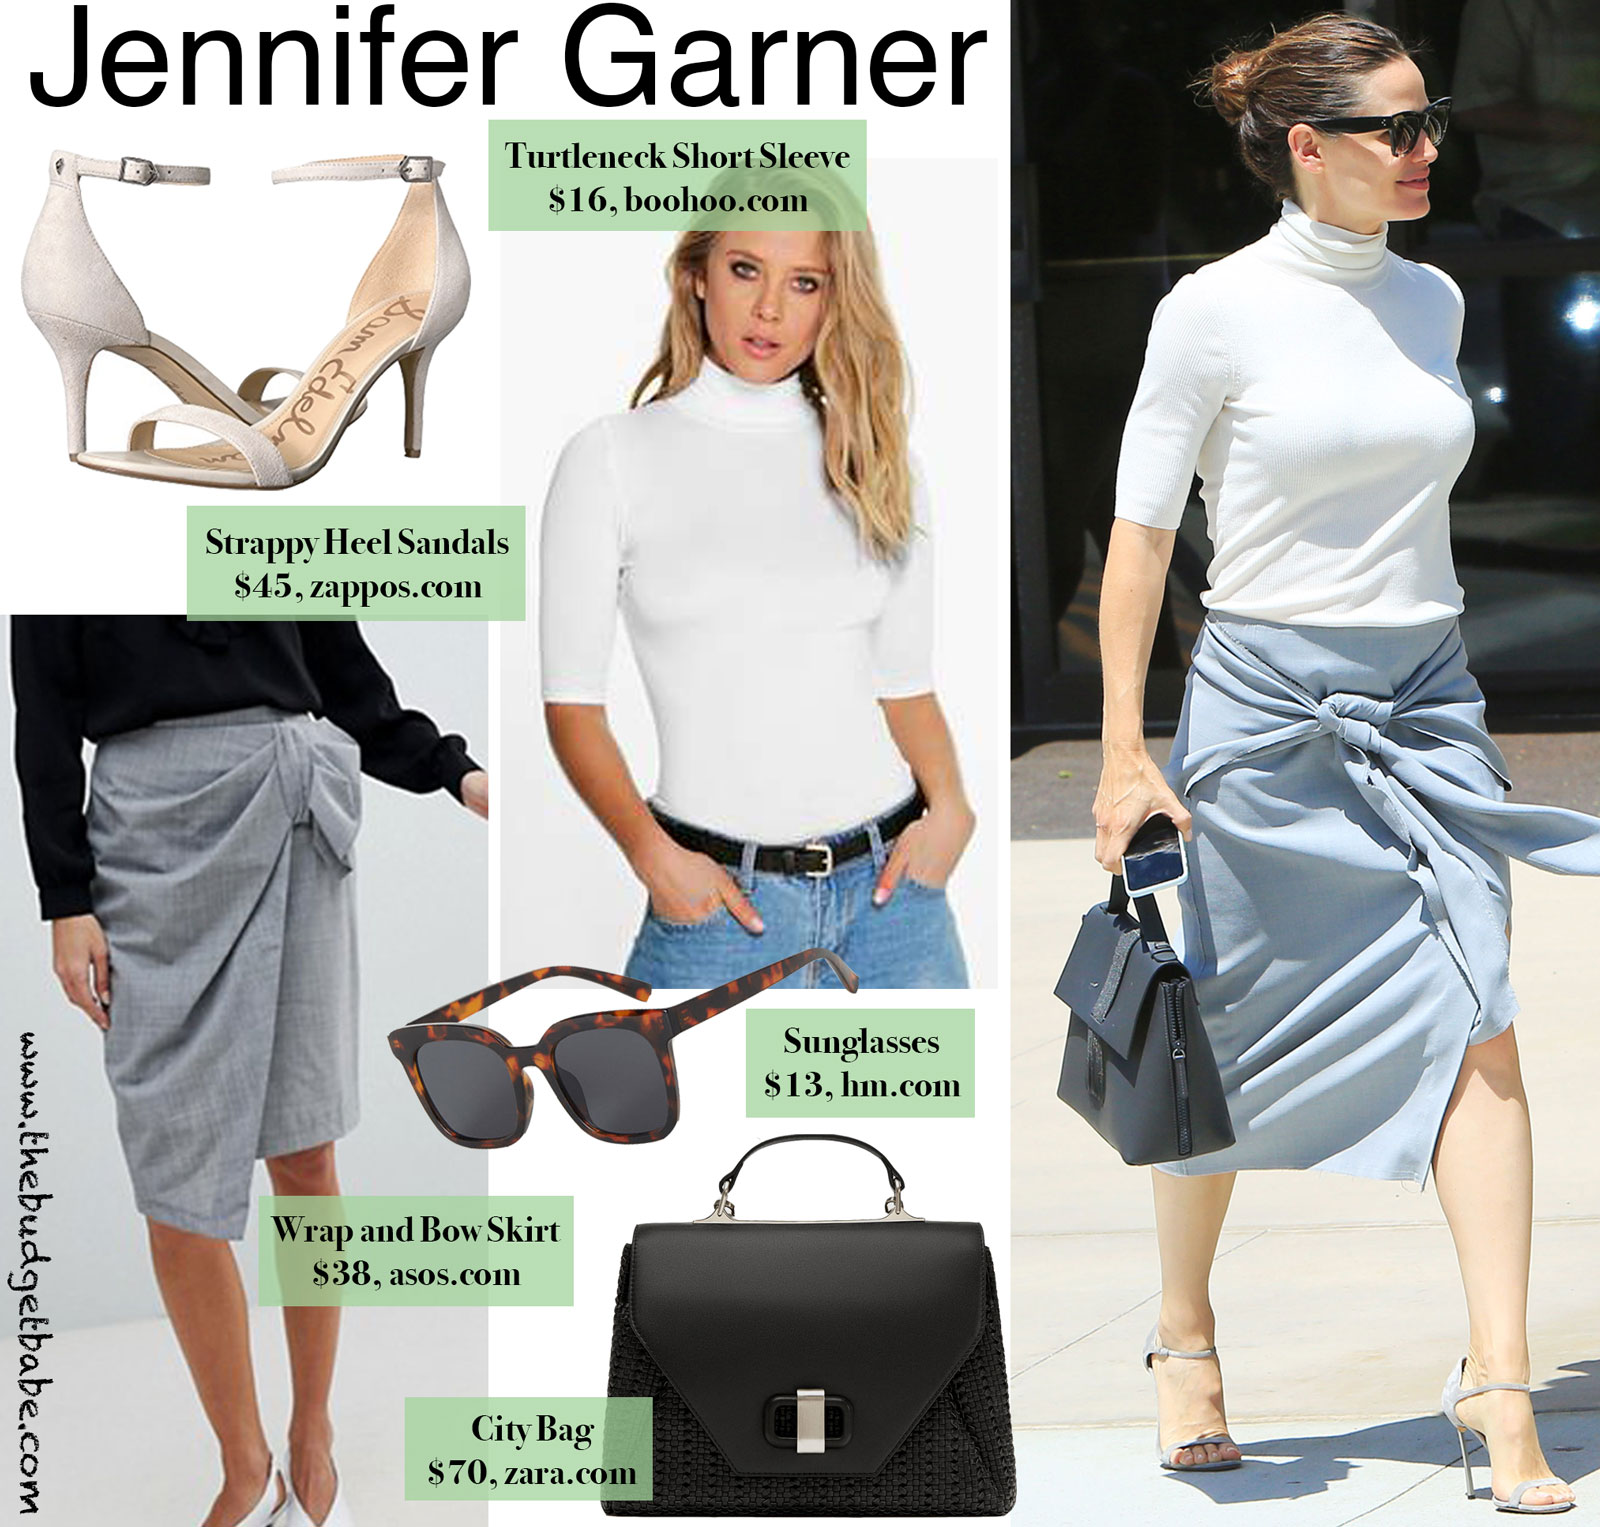 Jennifer Garner Turtleneck and Tie Front Look for Less